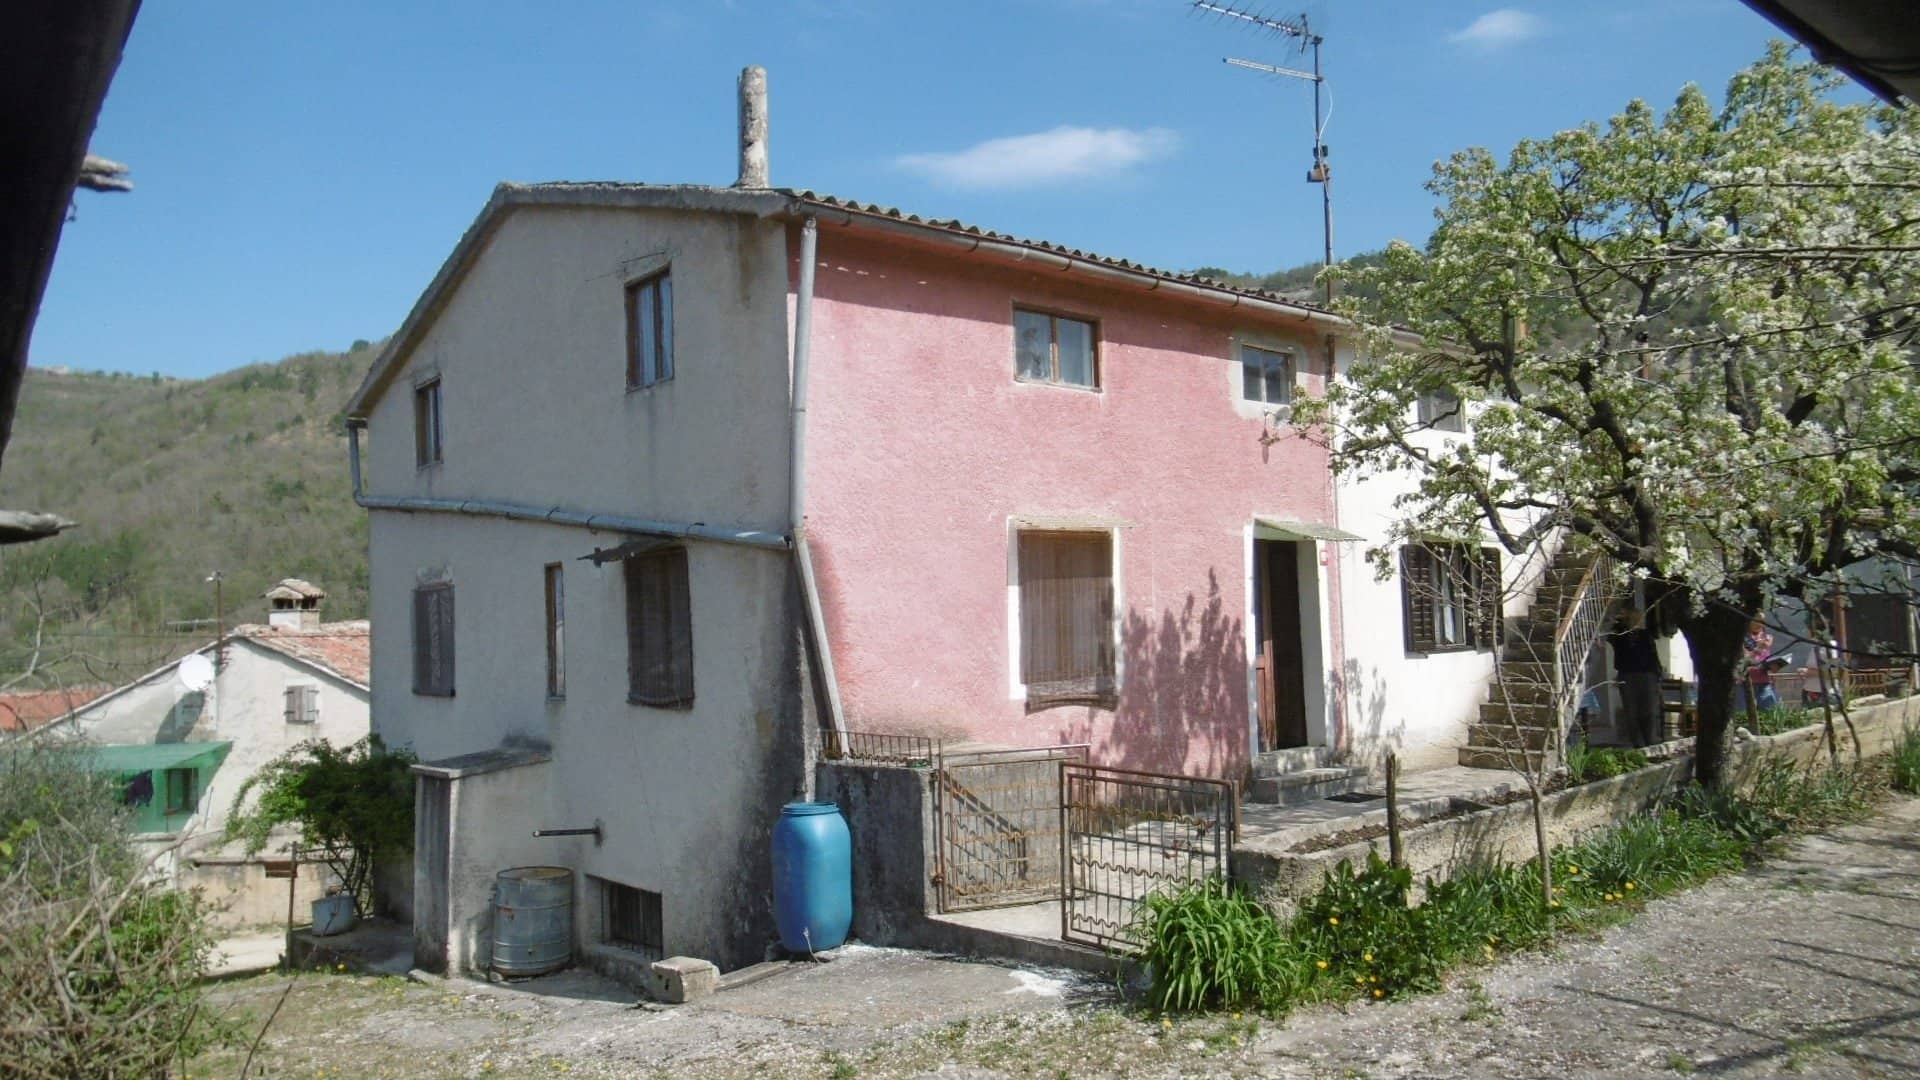 Kuća za renoviranje blizu Motovuna sa građevinskim terenom